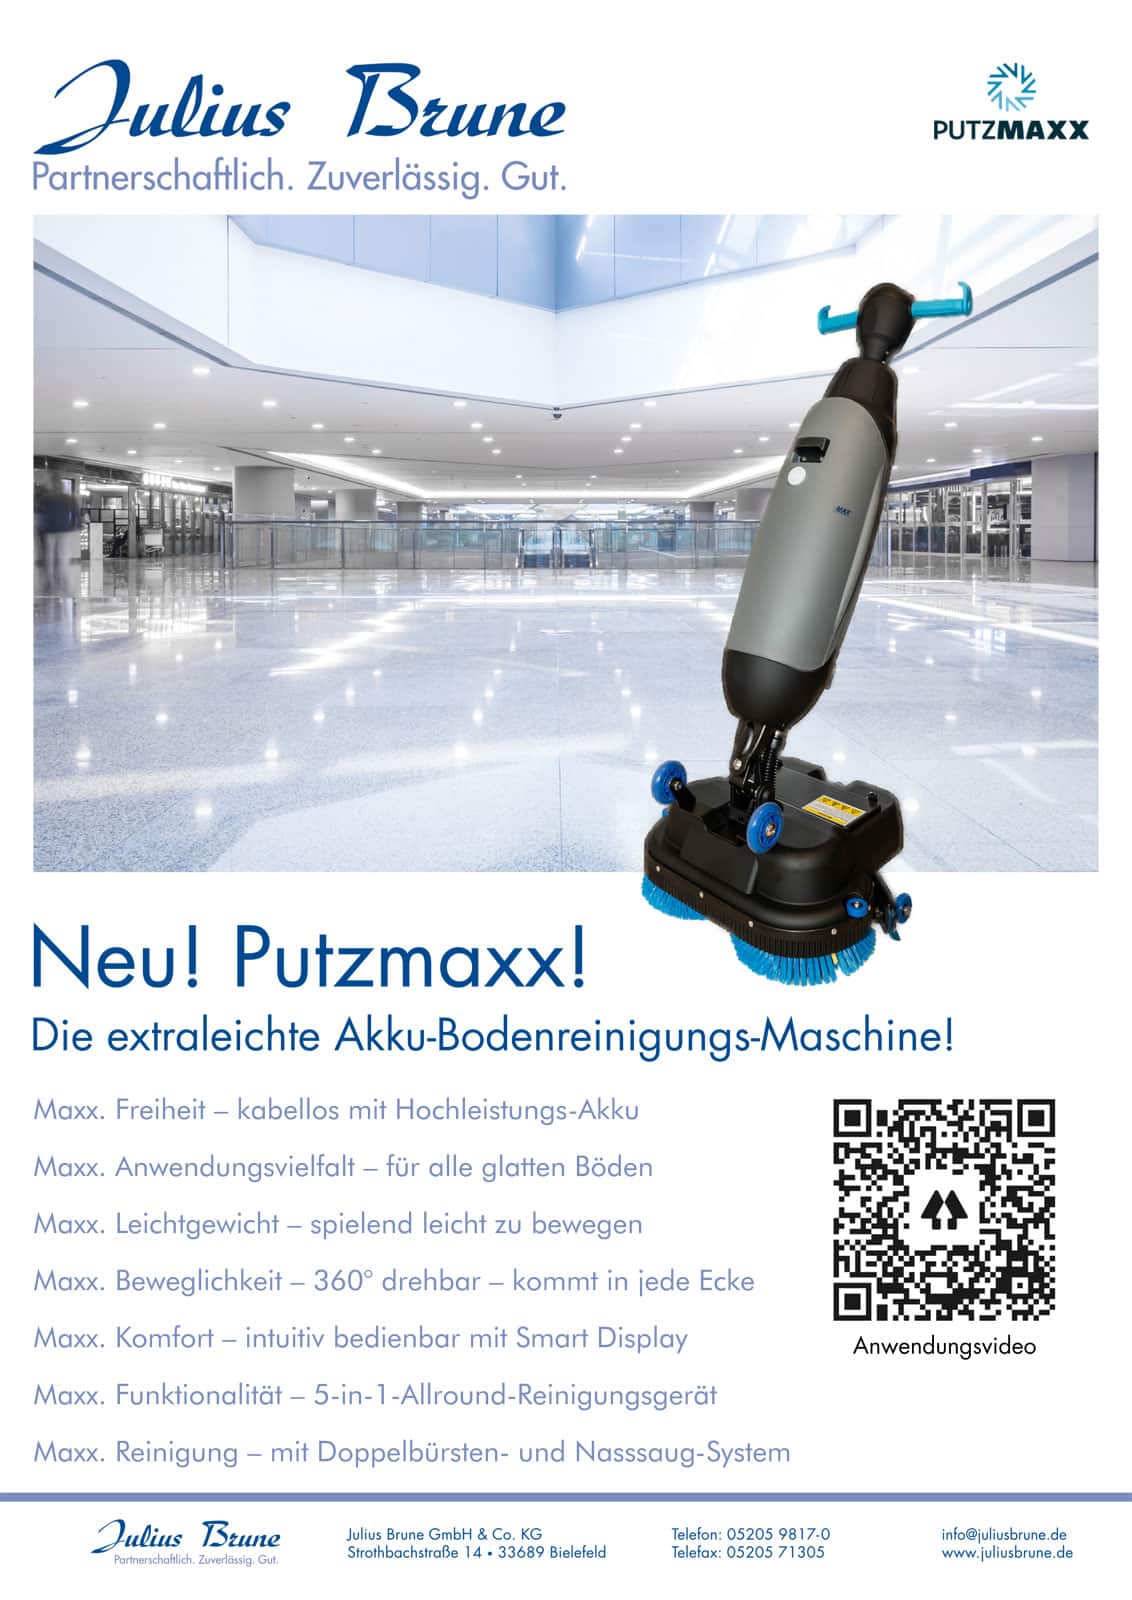 Putzmaxx – Die extraleichte Akku-Bodenreinigungs-Maschine